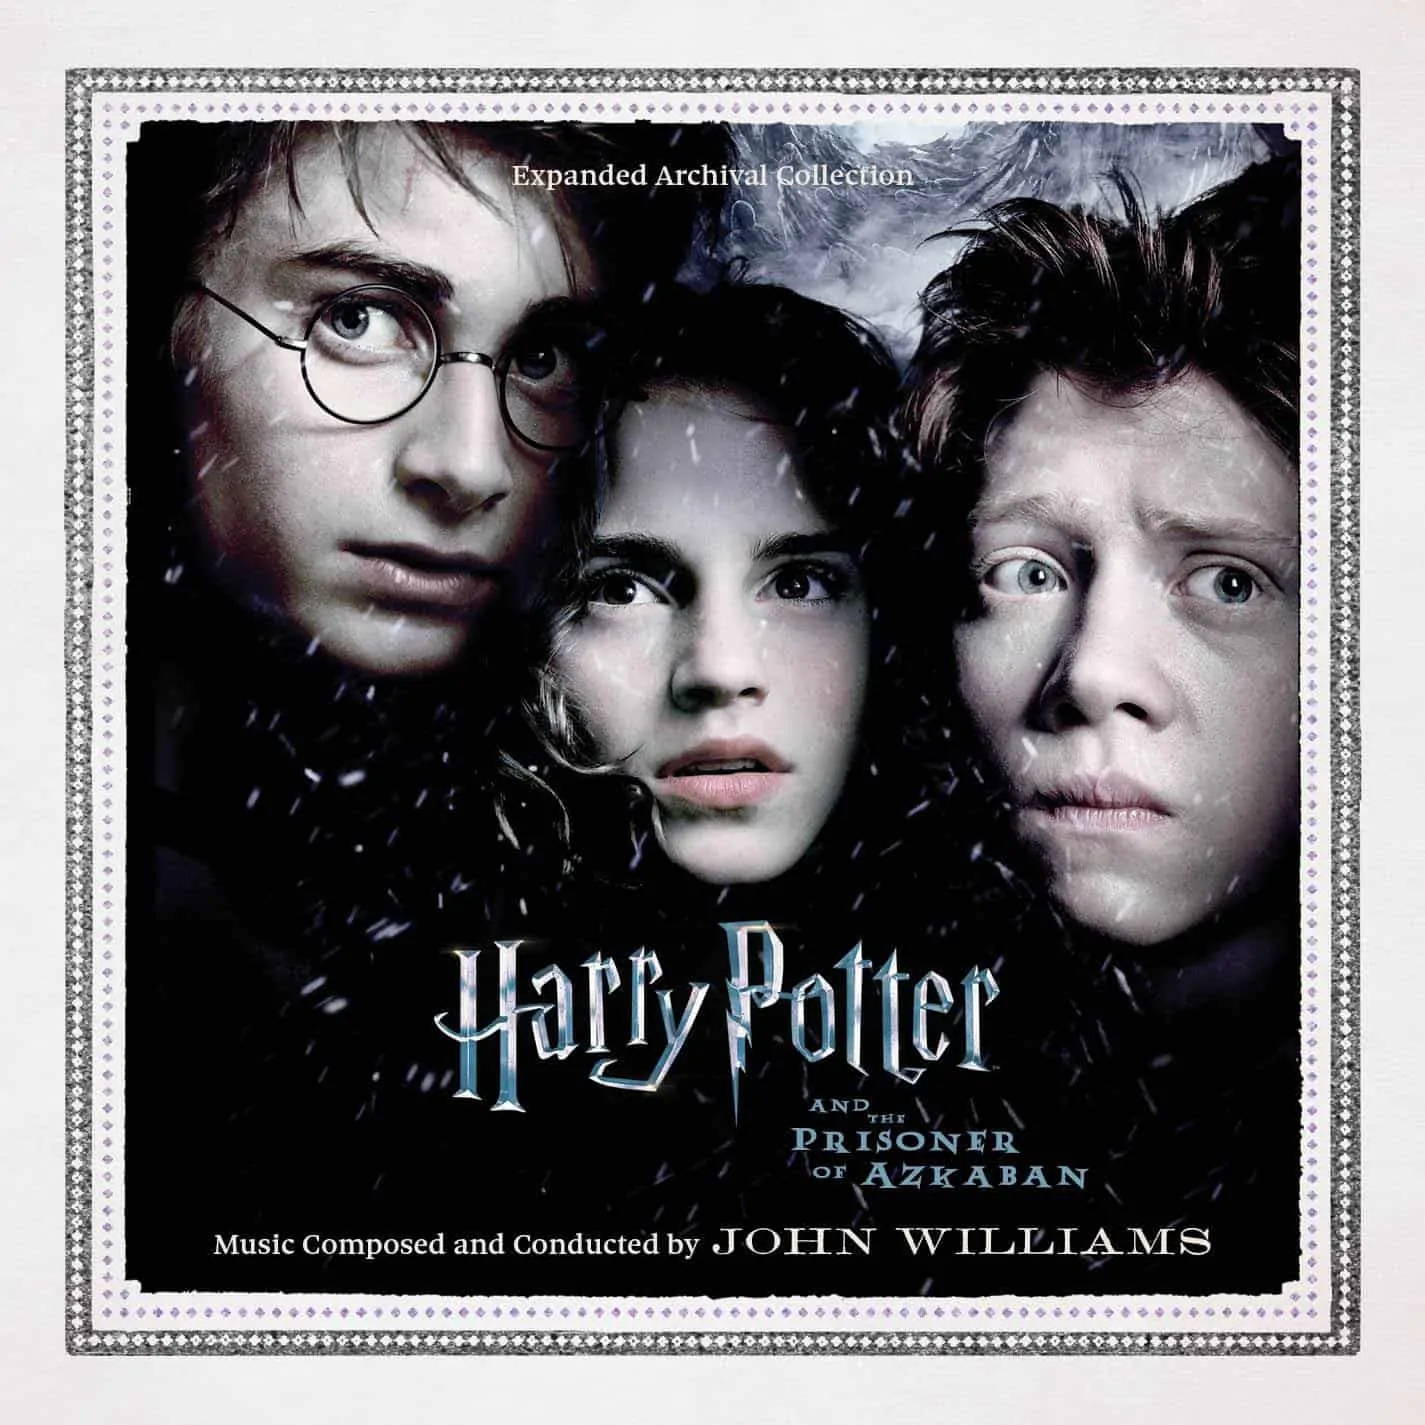 Harry Potter soundtracks will get unpublished tracks